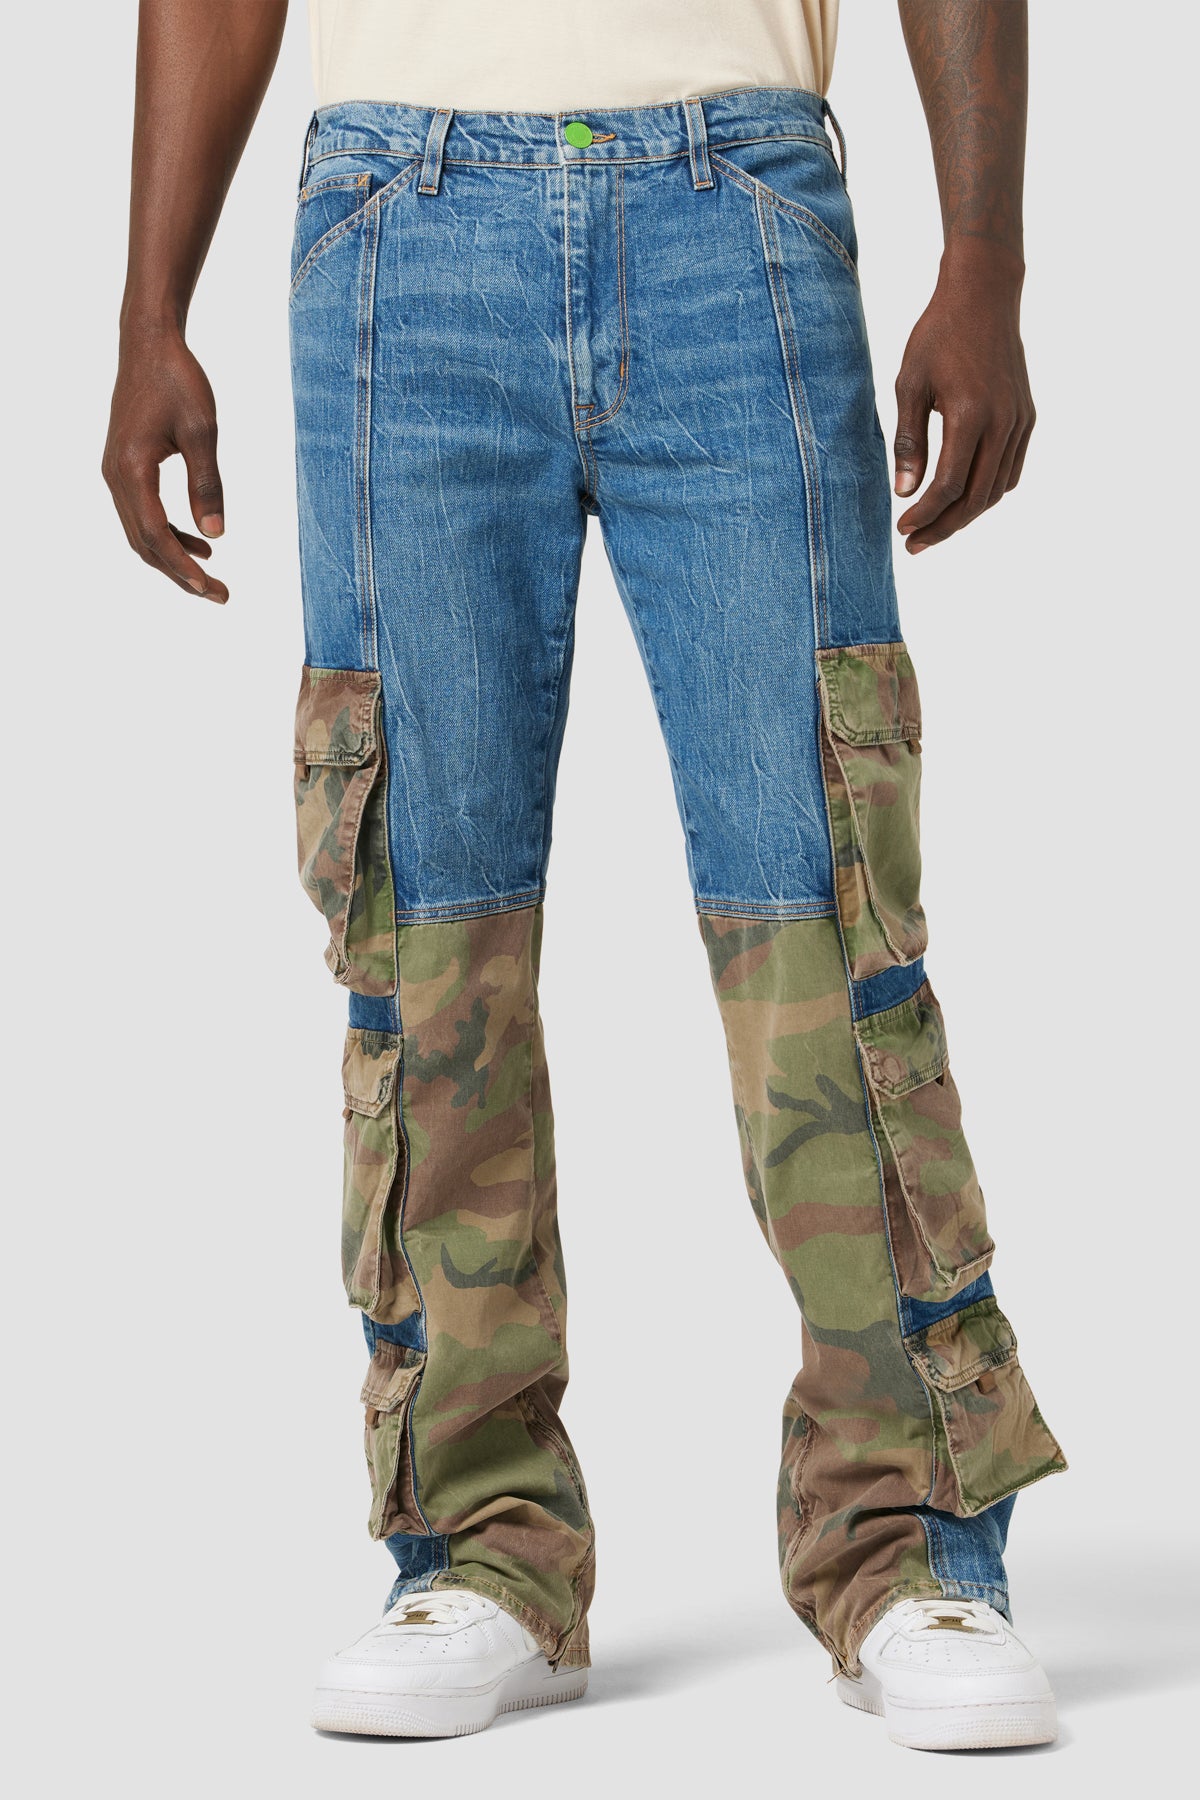 Dtydtpe 2024 Clearance Sales, Mens Jeans Men's Fashion Plus-Size Loose Jeans  Street Wide Leg Trousers Pants Cargo Pants for Men - Walmart.com